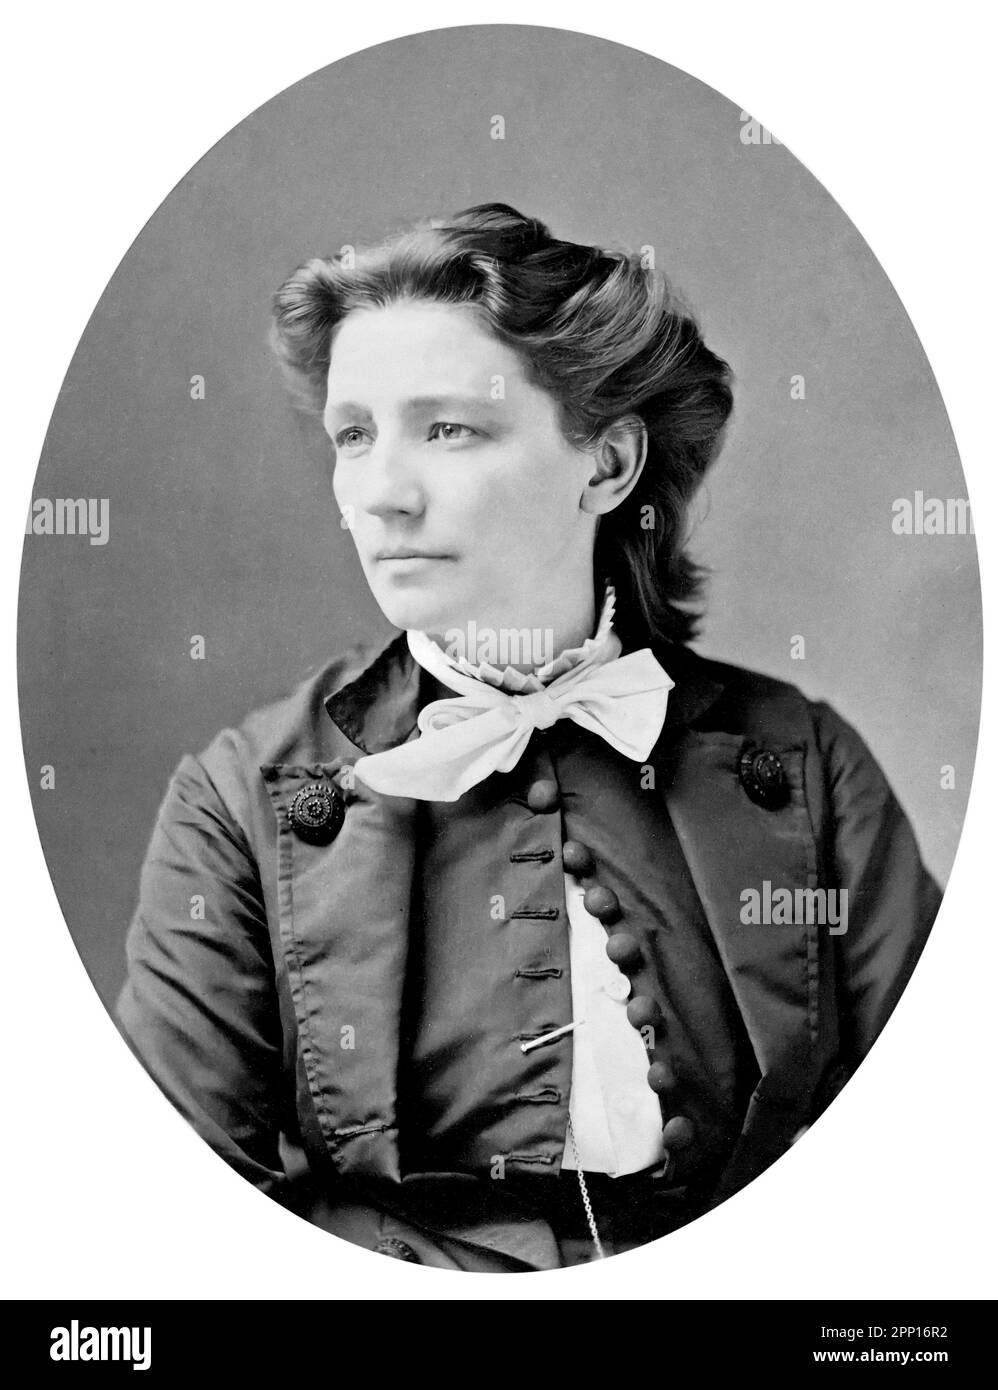 Victoria Woodhull. Ritratto del candidato suffragista e presidenziale americano, Victoria Claflin Woodhull (1838-1927) di Mathew Brady, 1870 Foto Stock